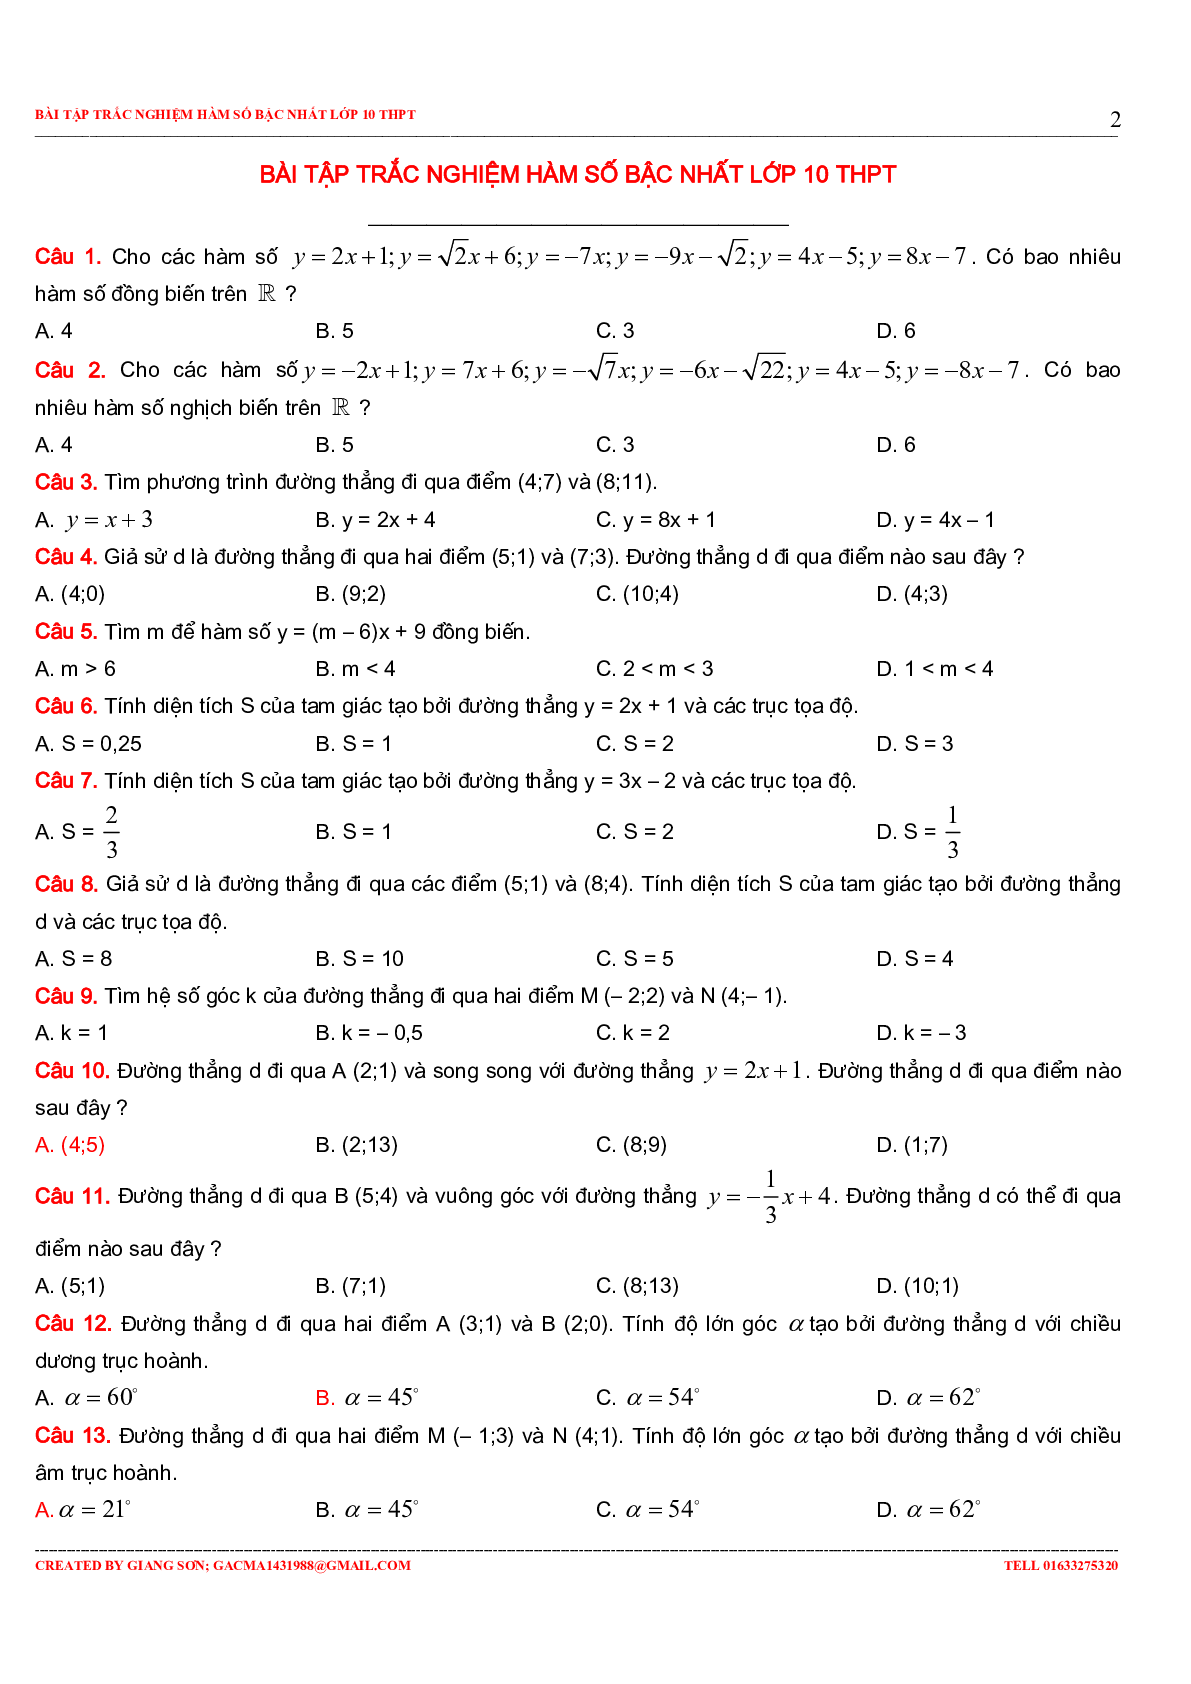 229 bài tập trắc nghiệm hàm số bậc nhất (trang 2)